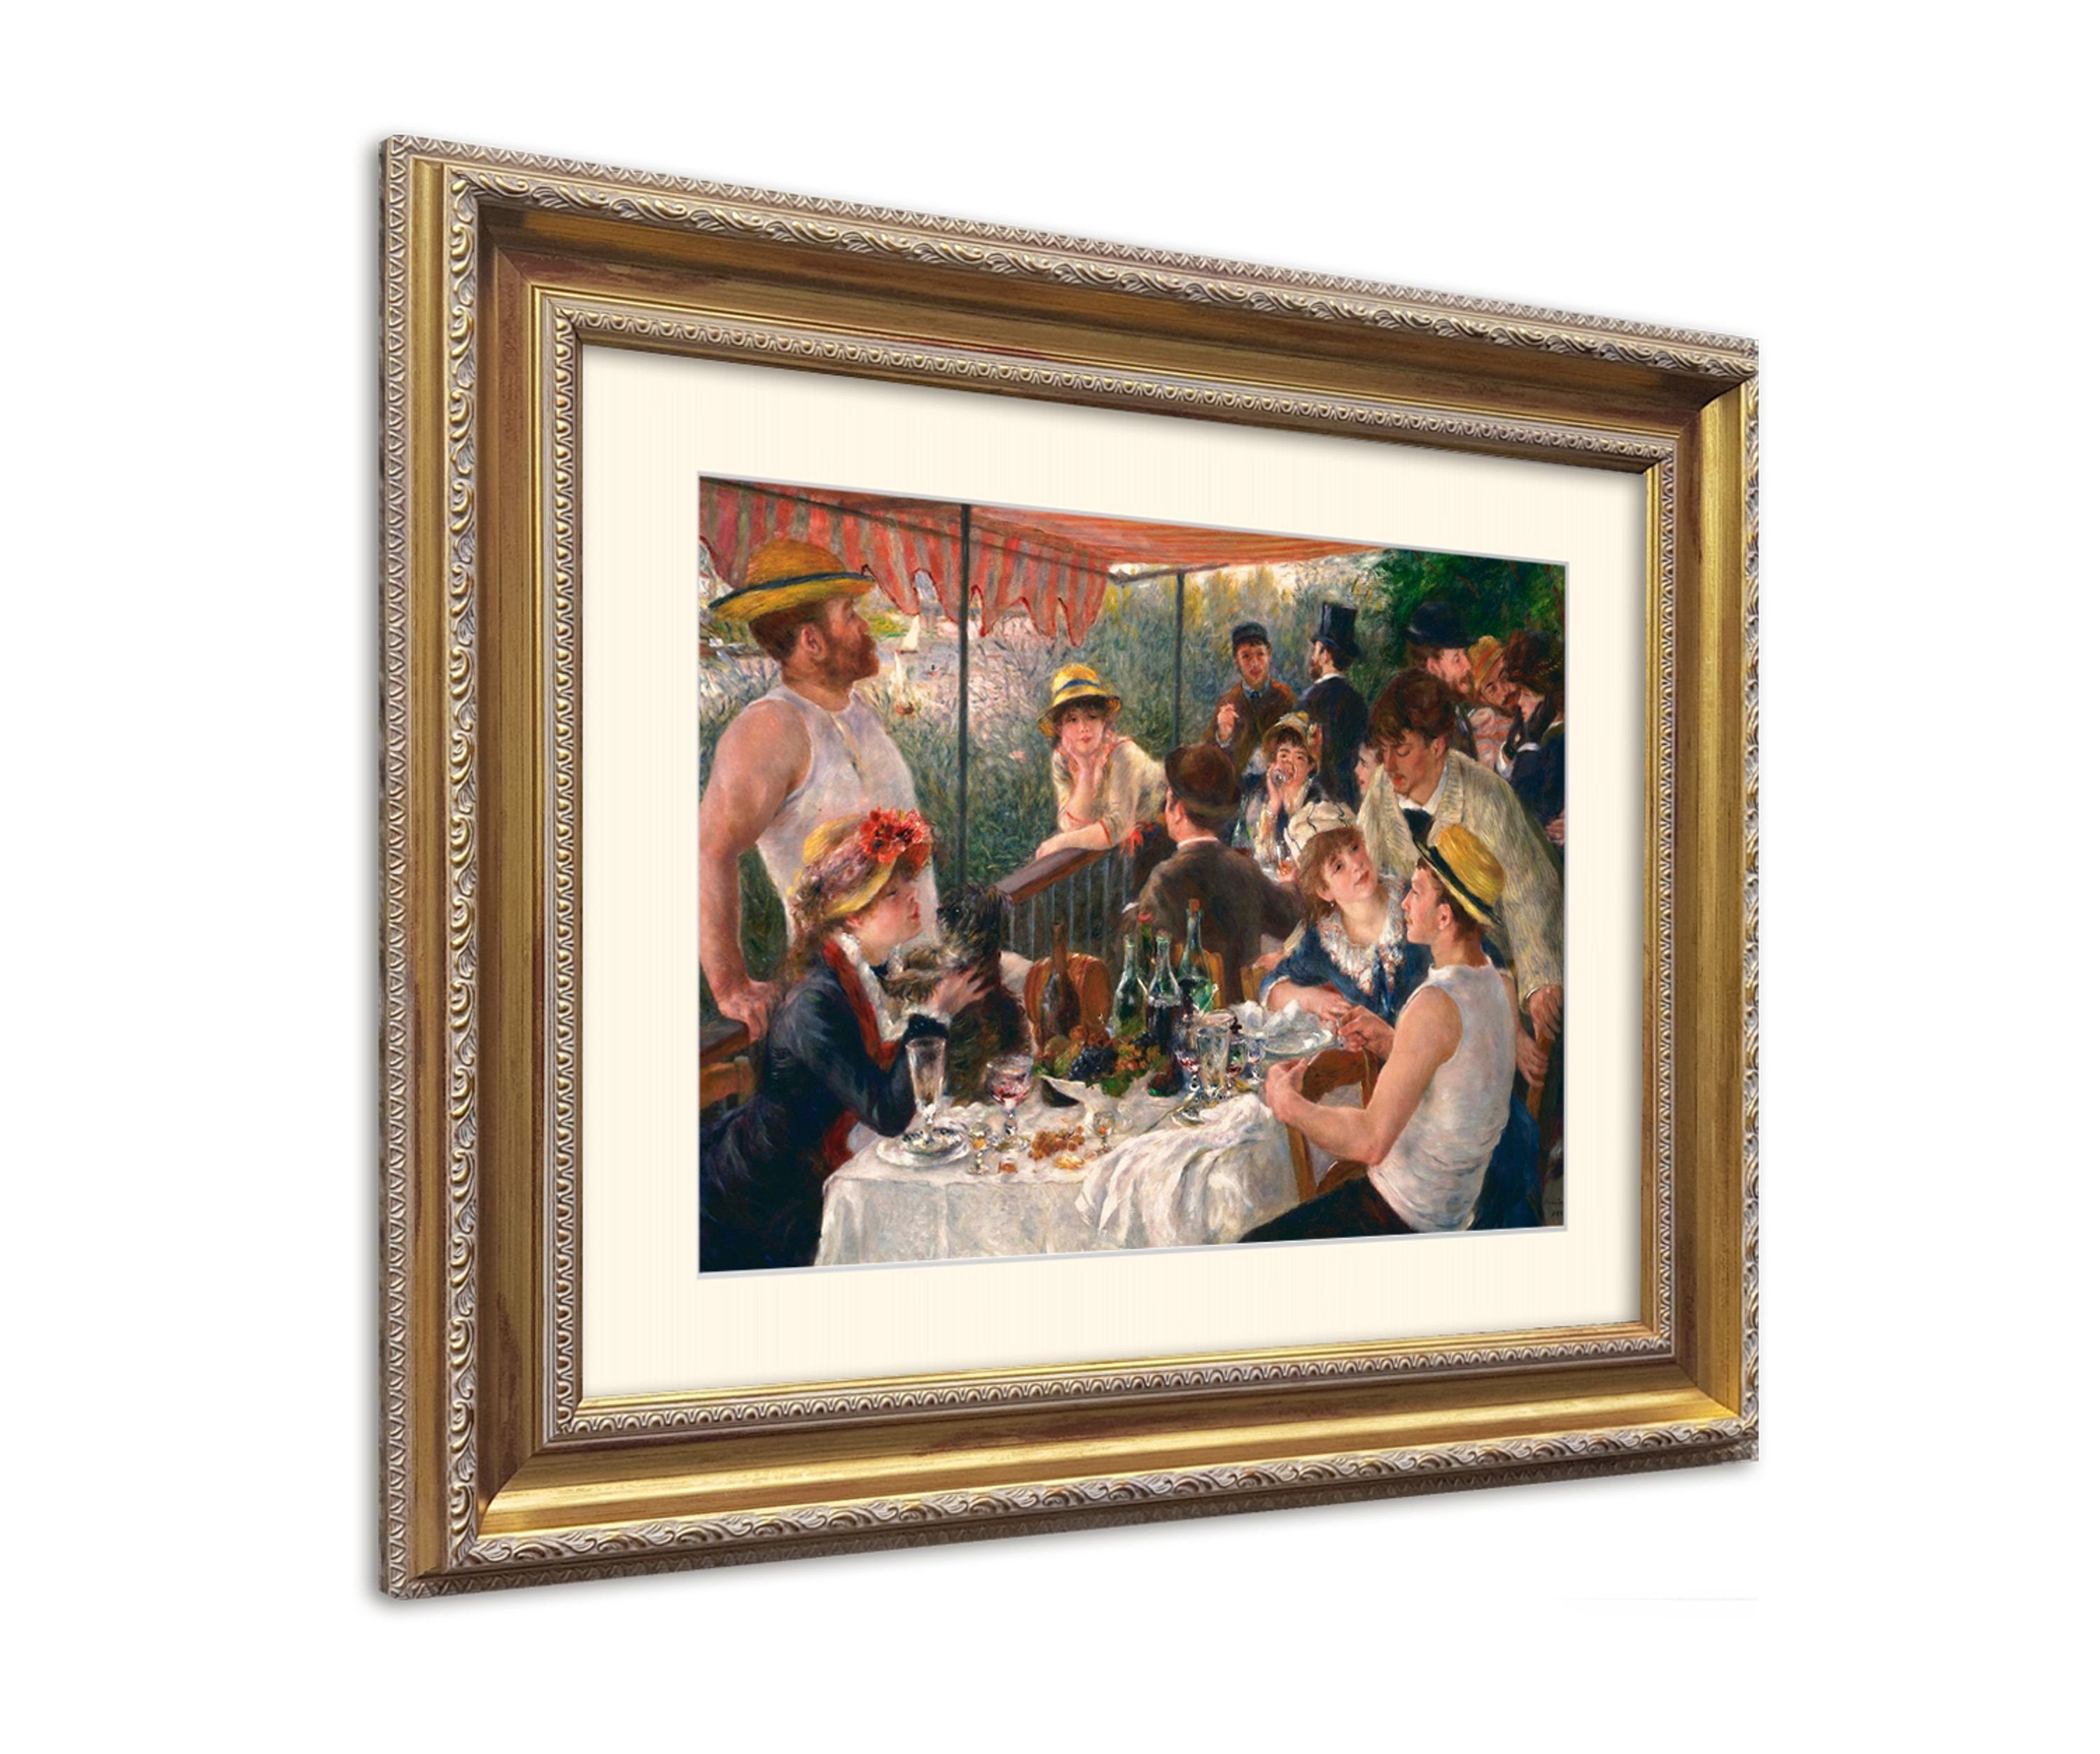 Frühstück Party Bild August mit of Poster artissimo Ruderer : Bild / on Lunche Barock-Rahmen the / der Wandbild, Rahmen erahmt Renoir / Das mit Renoir 63x53cm Boating